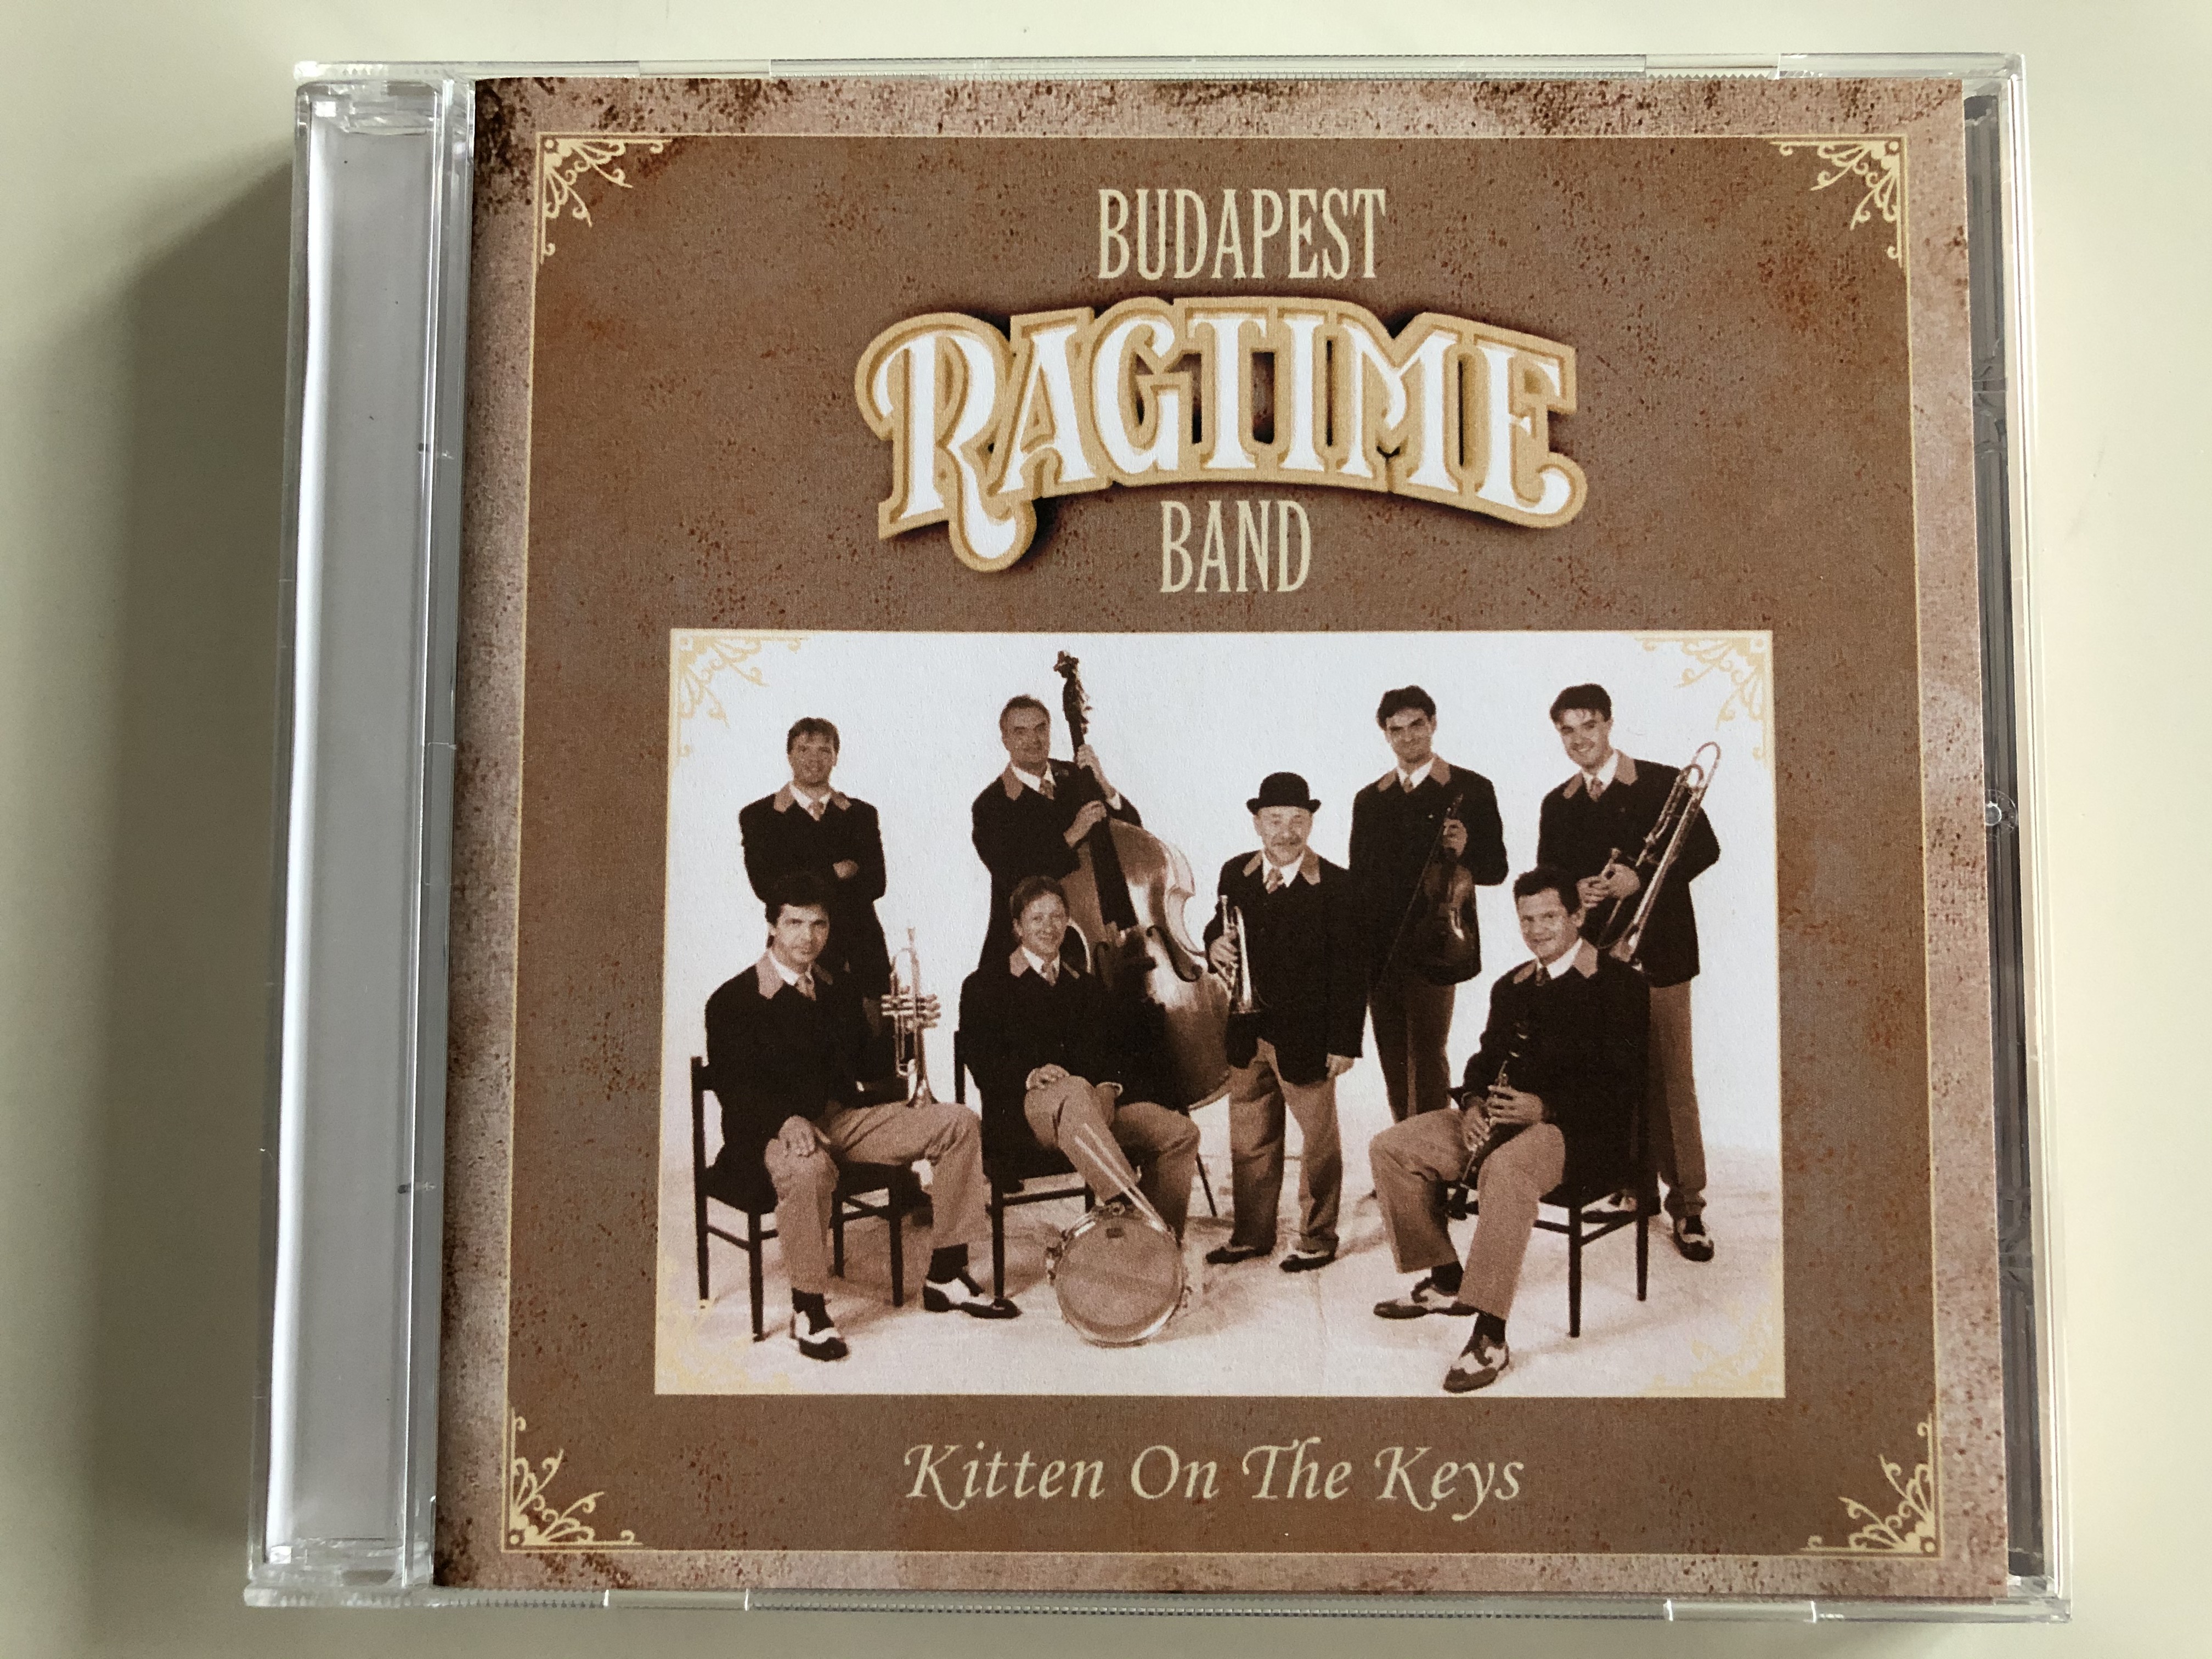 budapest-ragtime-band-kitten-on-the-keys-budapest-ragtime-band-audio-cd-brb-cd008-1-.jpg